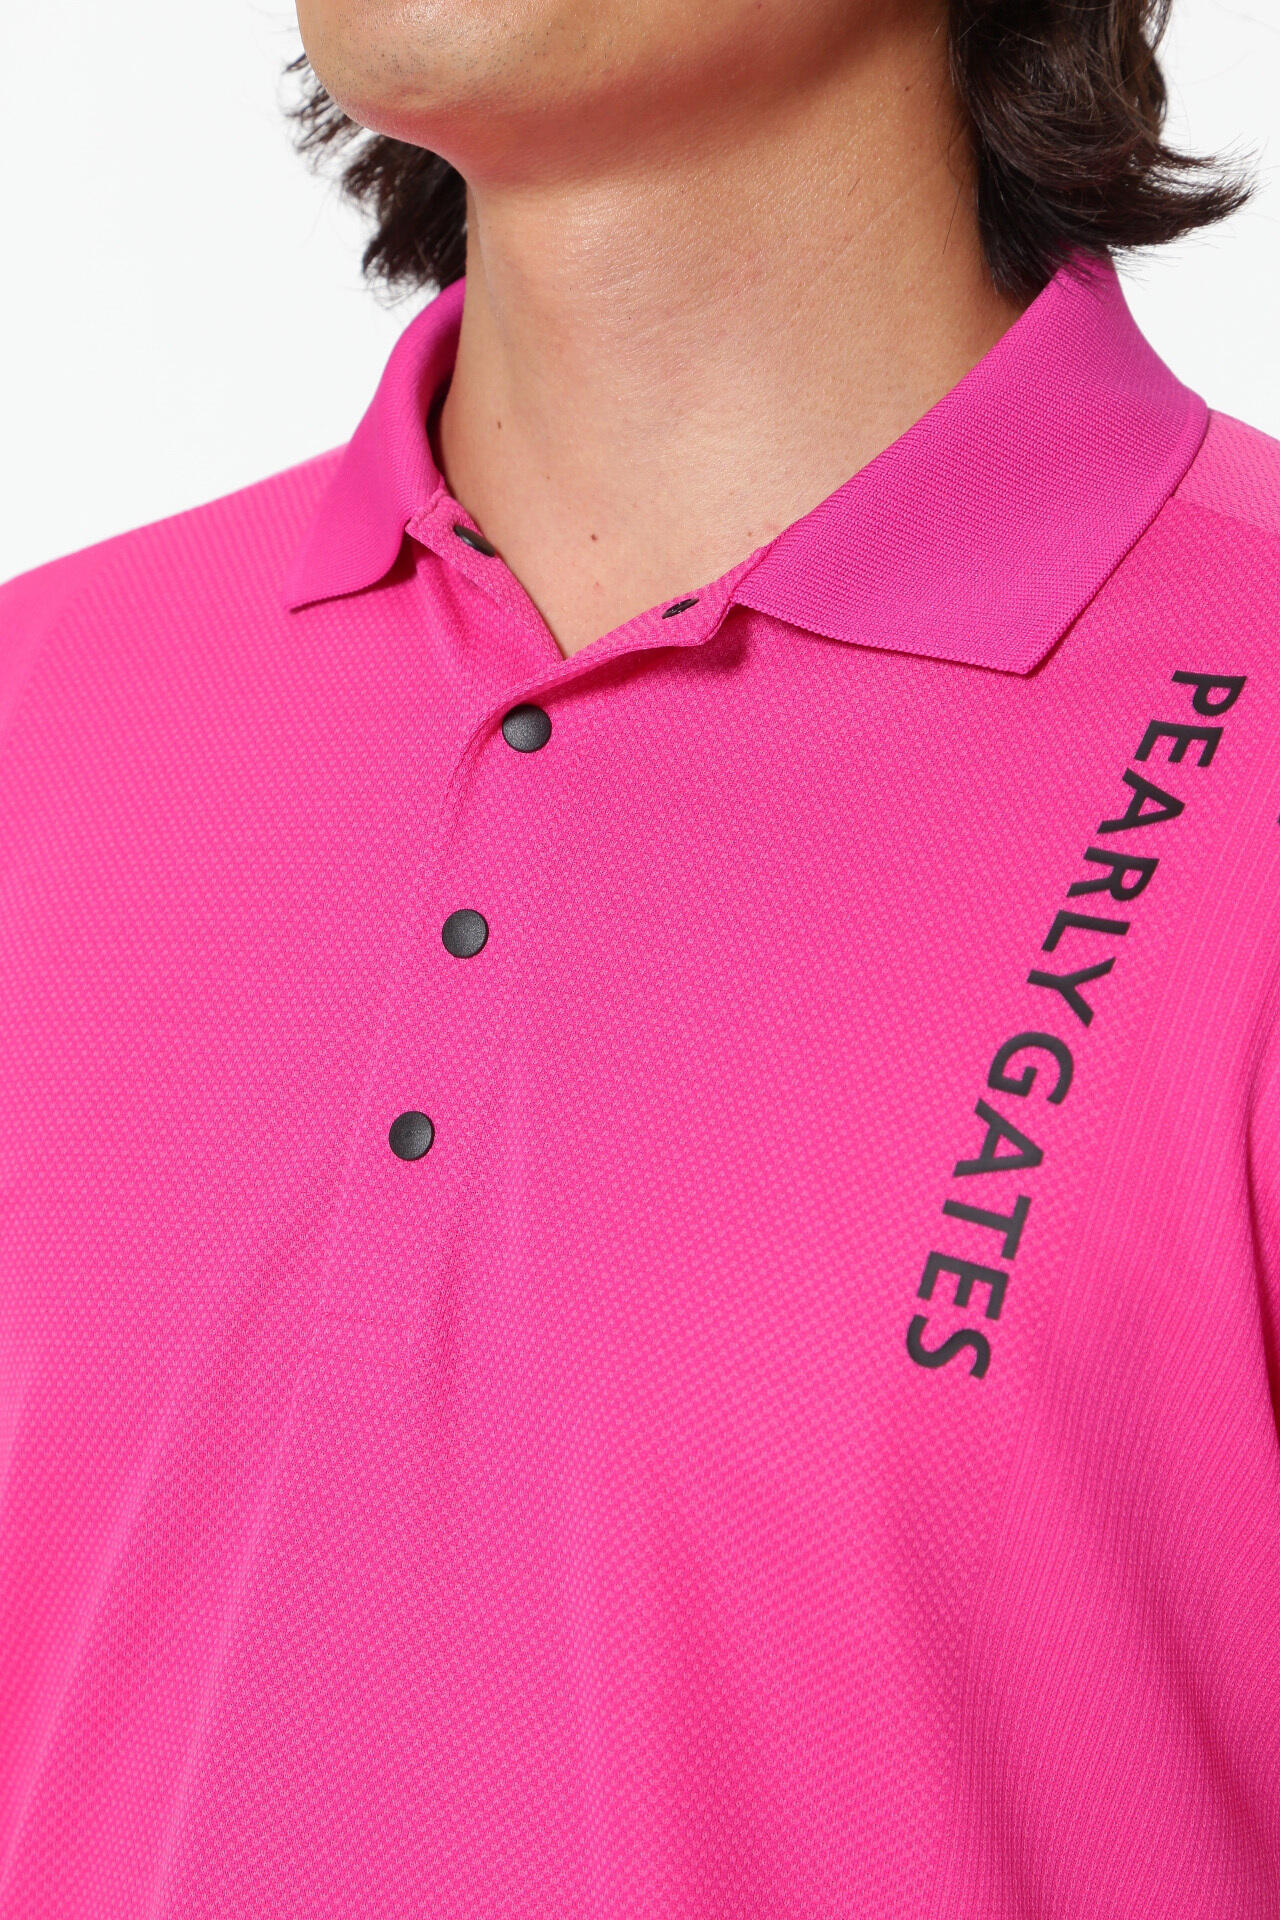 パーリーゲイツ PEARLYGATESポロシャツ ピンク size 4 - ウエア(男性用)